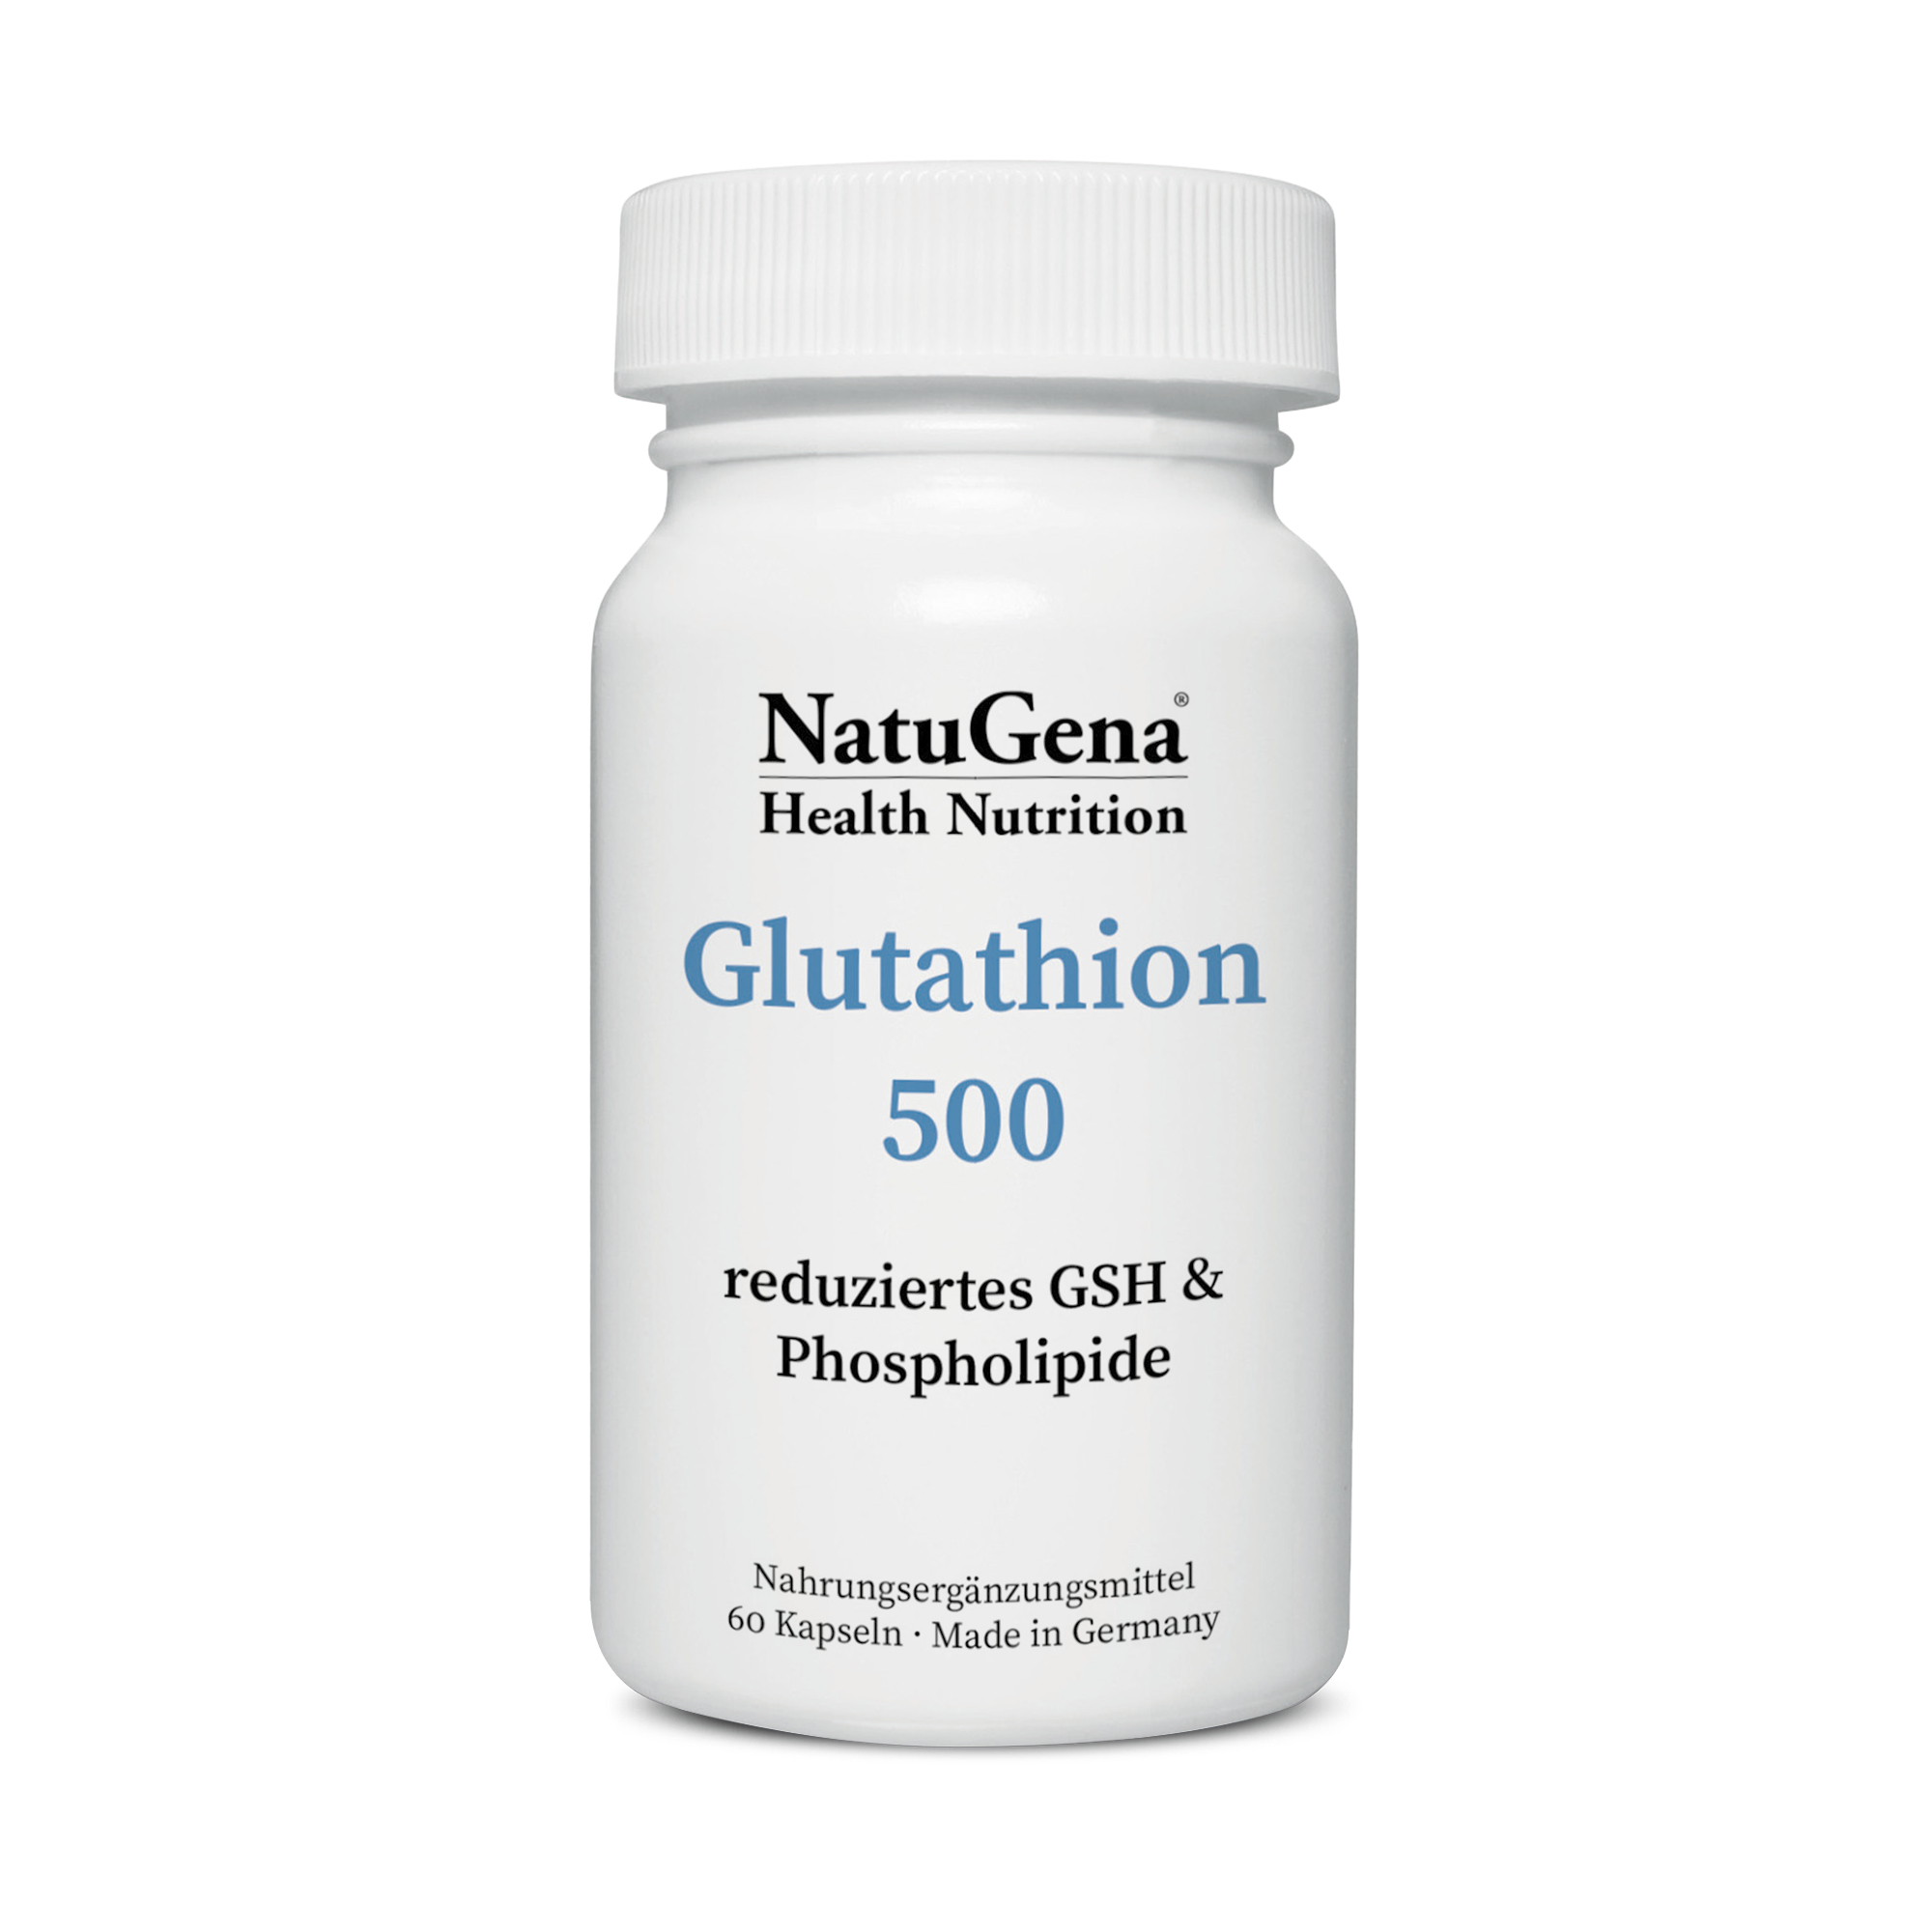 NatuGena Glutathion 500 | 60 Kapseln | Unterstützt antioxidative Abwehr & Zellgesundheit